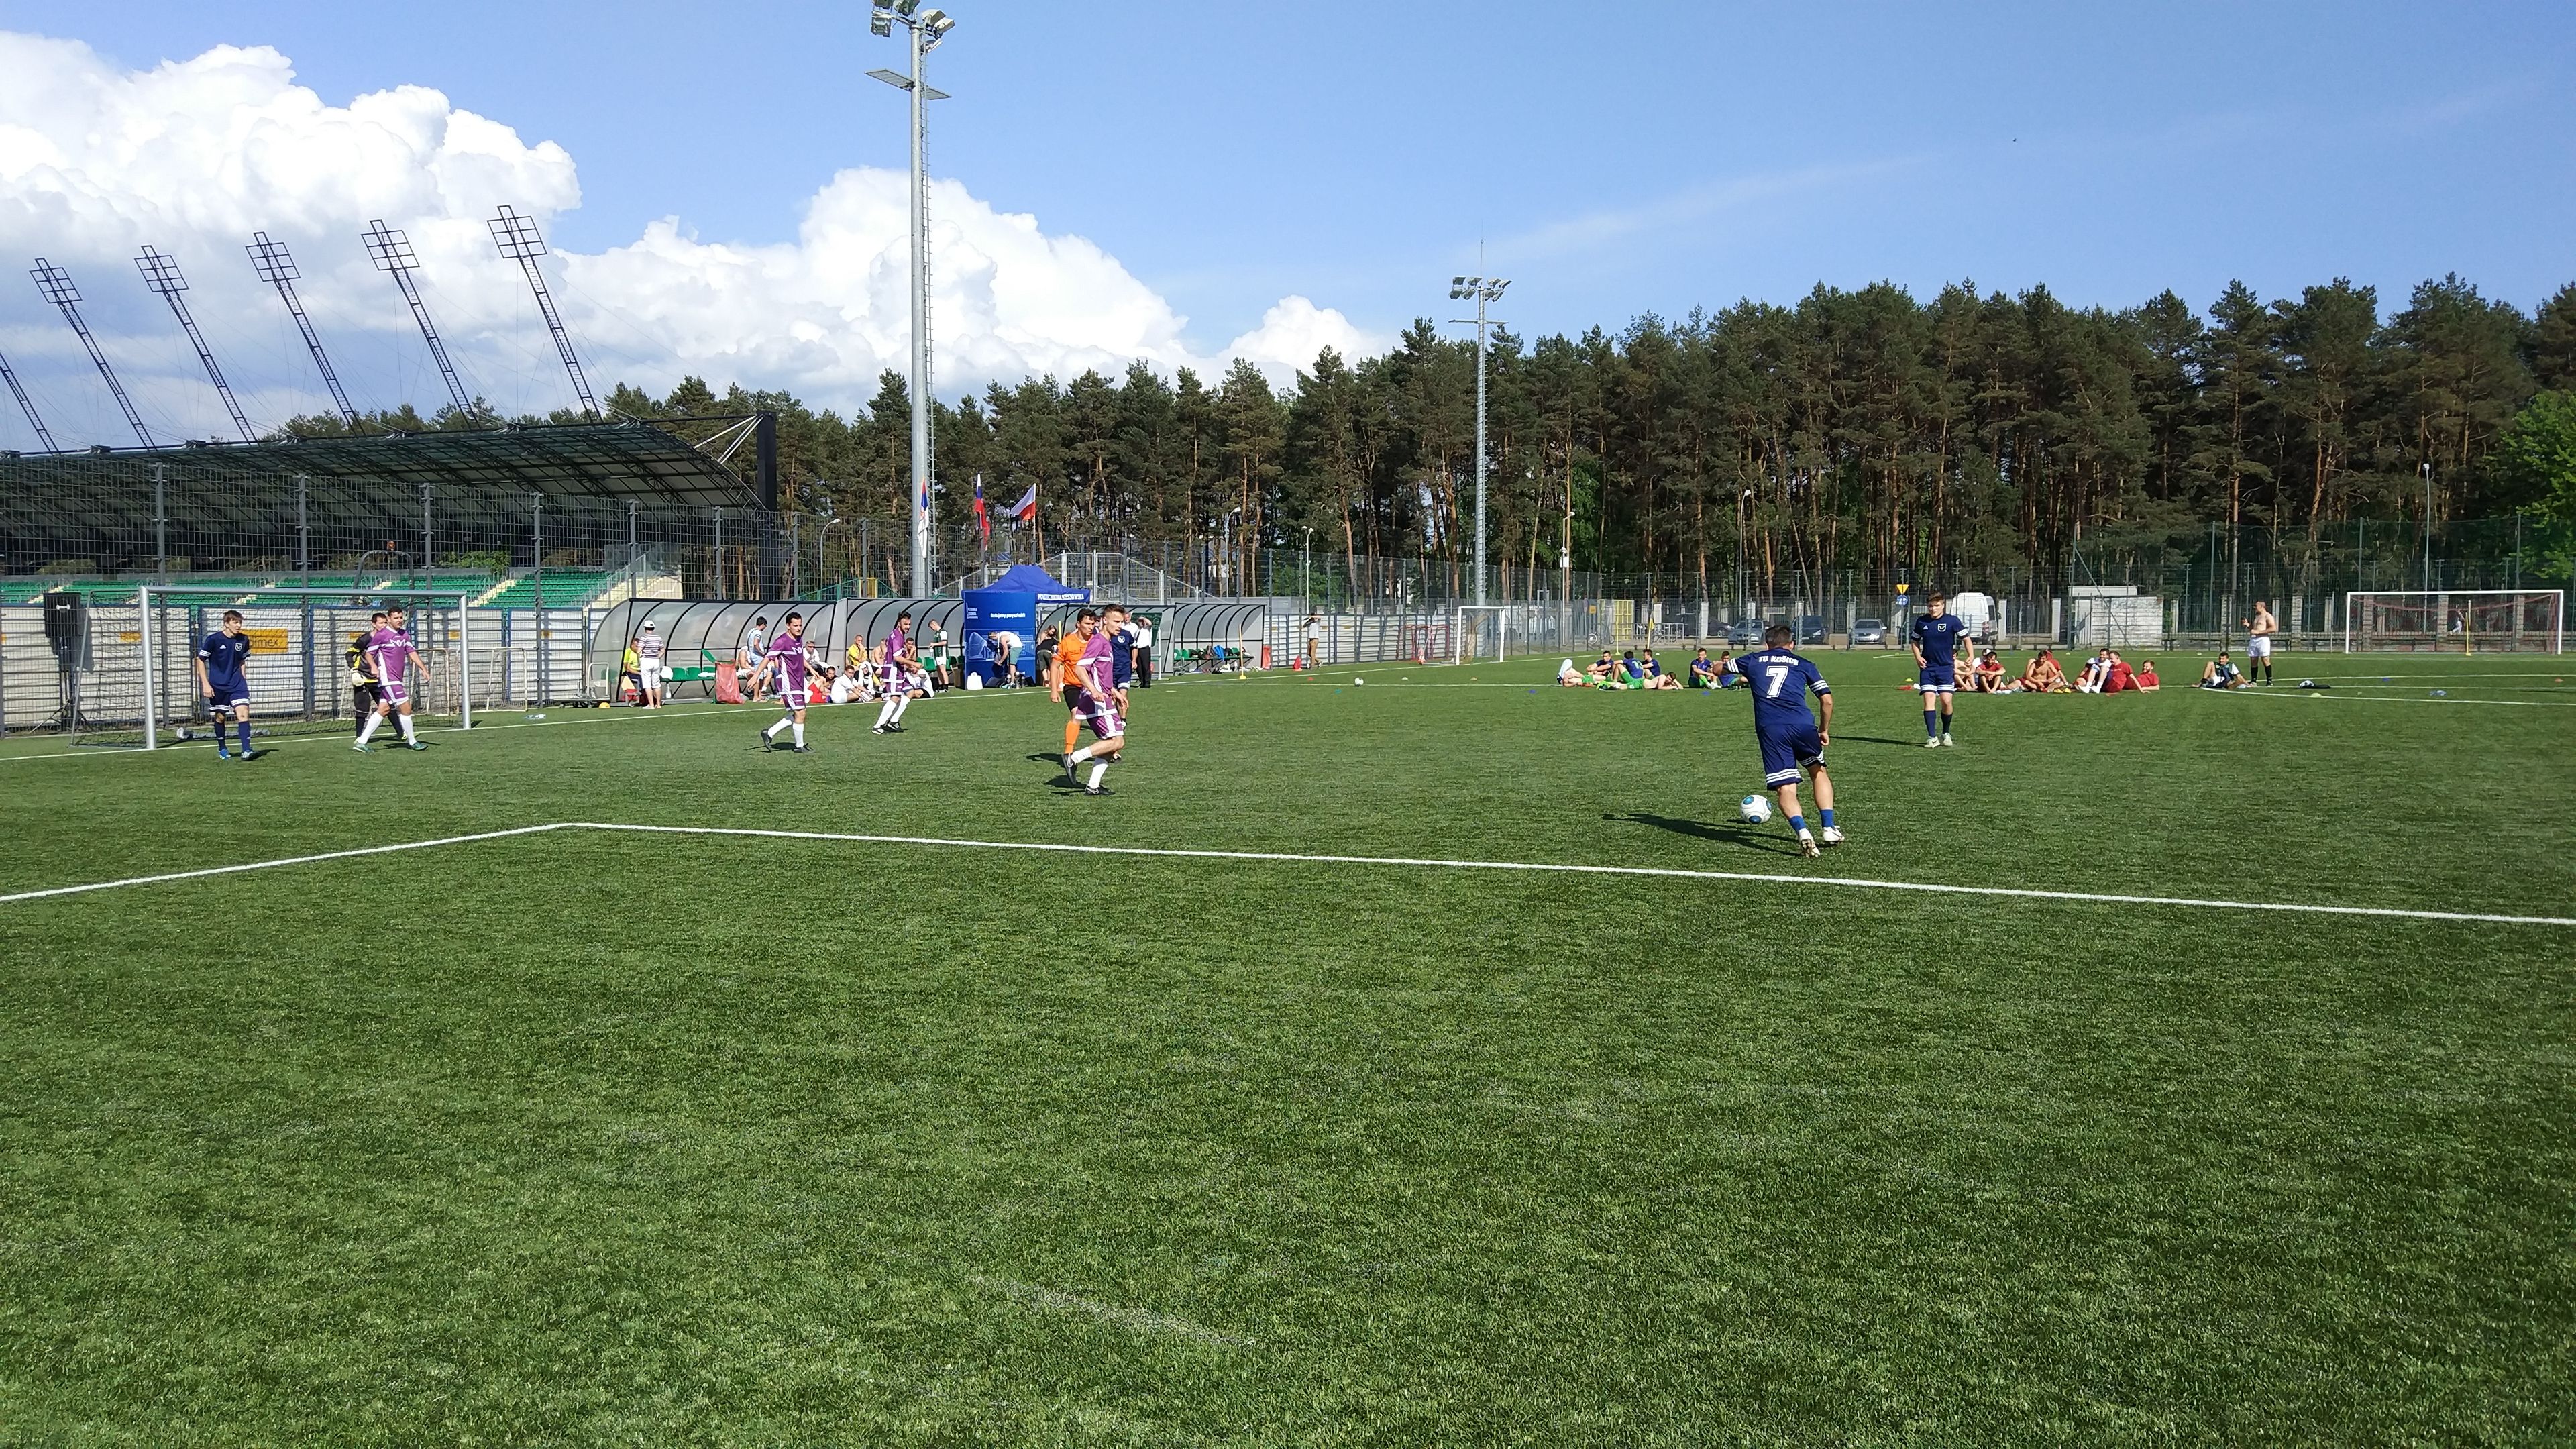 FMMR vyhrala 2. miesto na medzinárodnom futbalovom turnaji v Poľsku